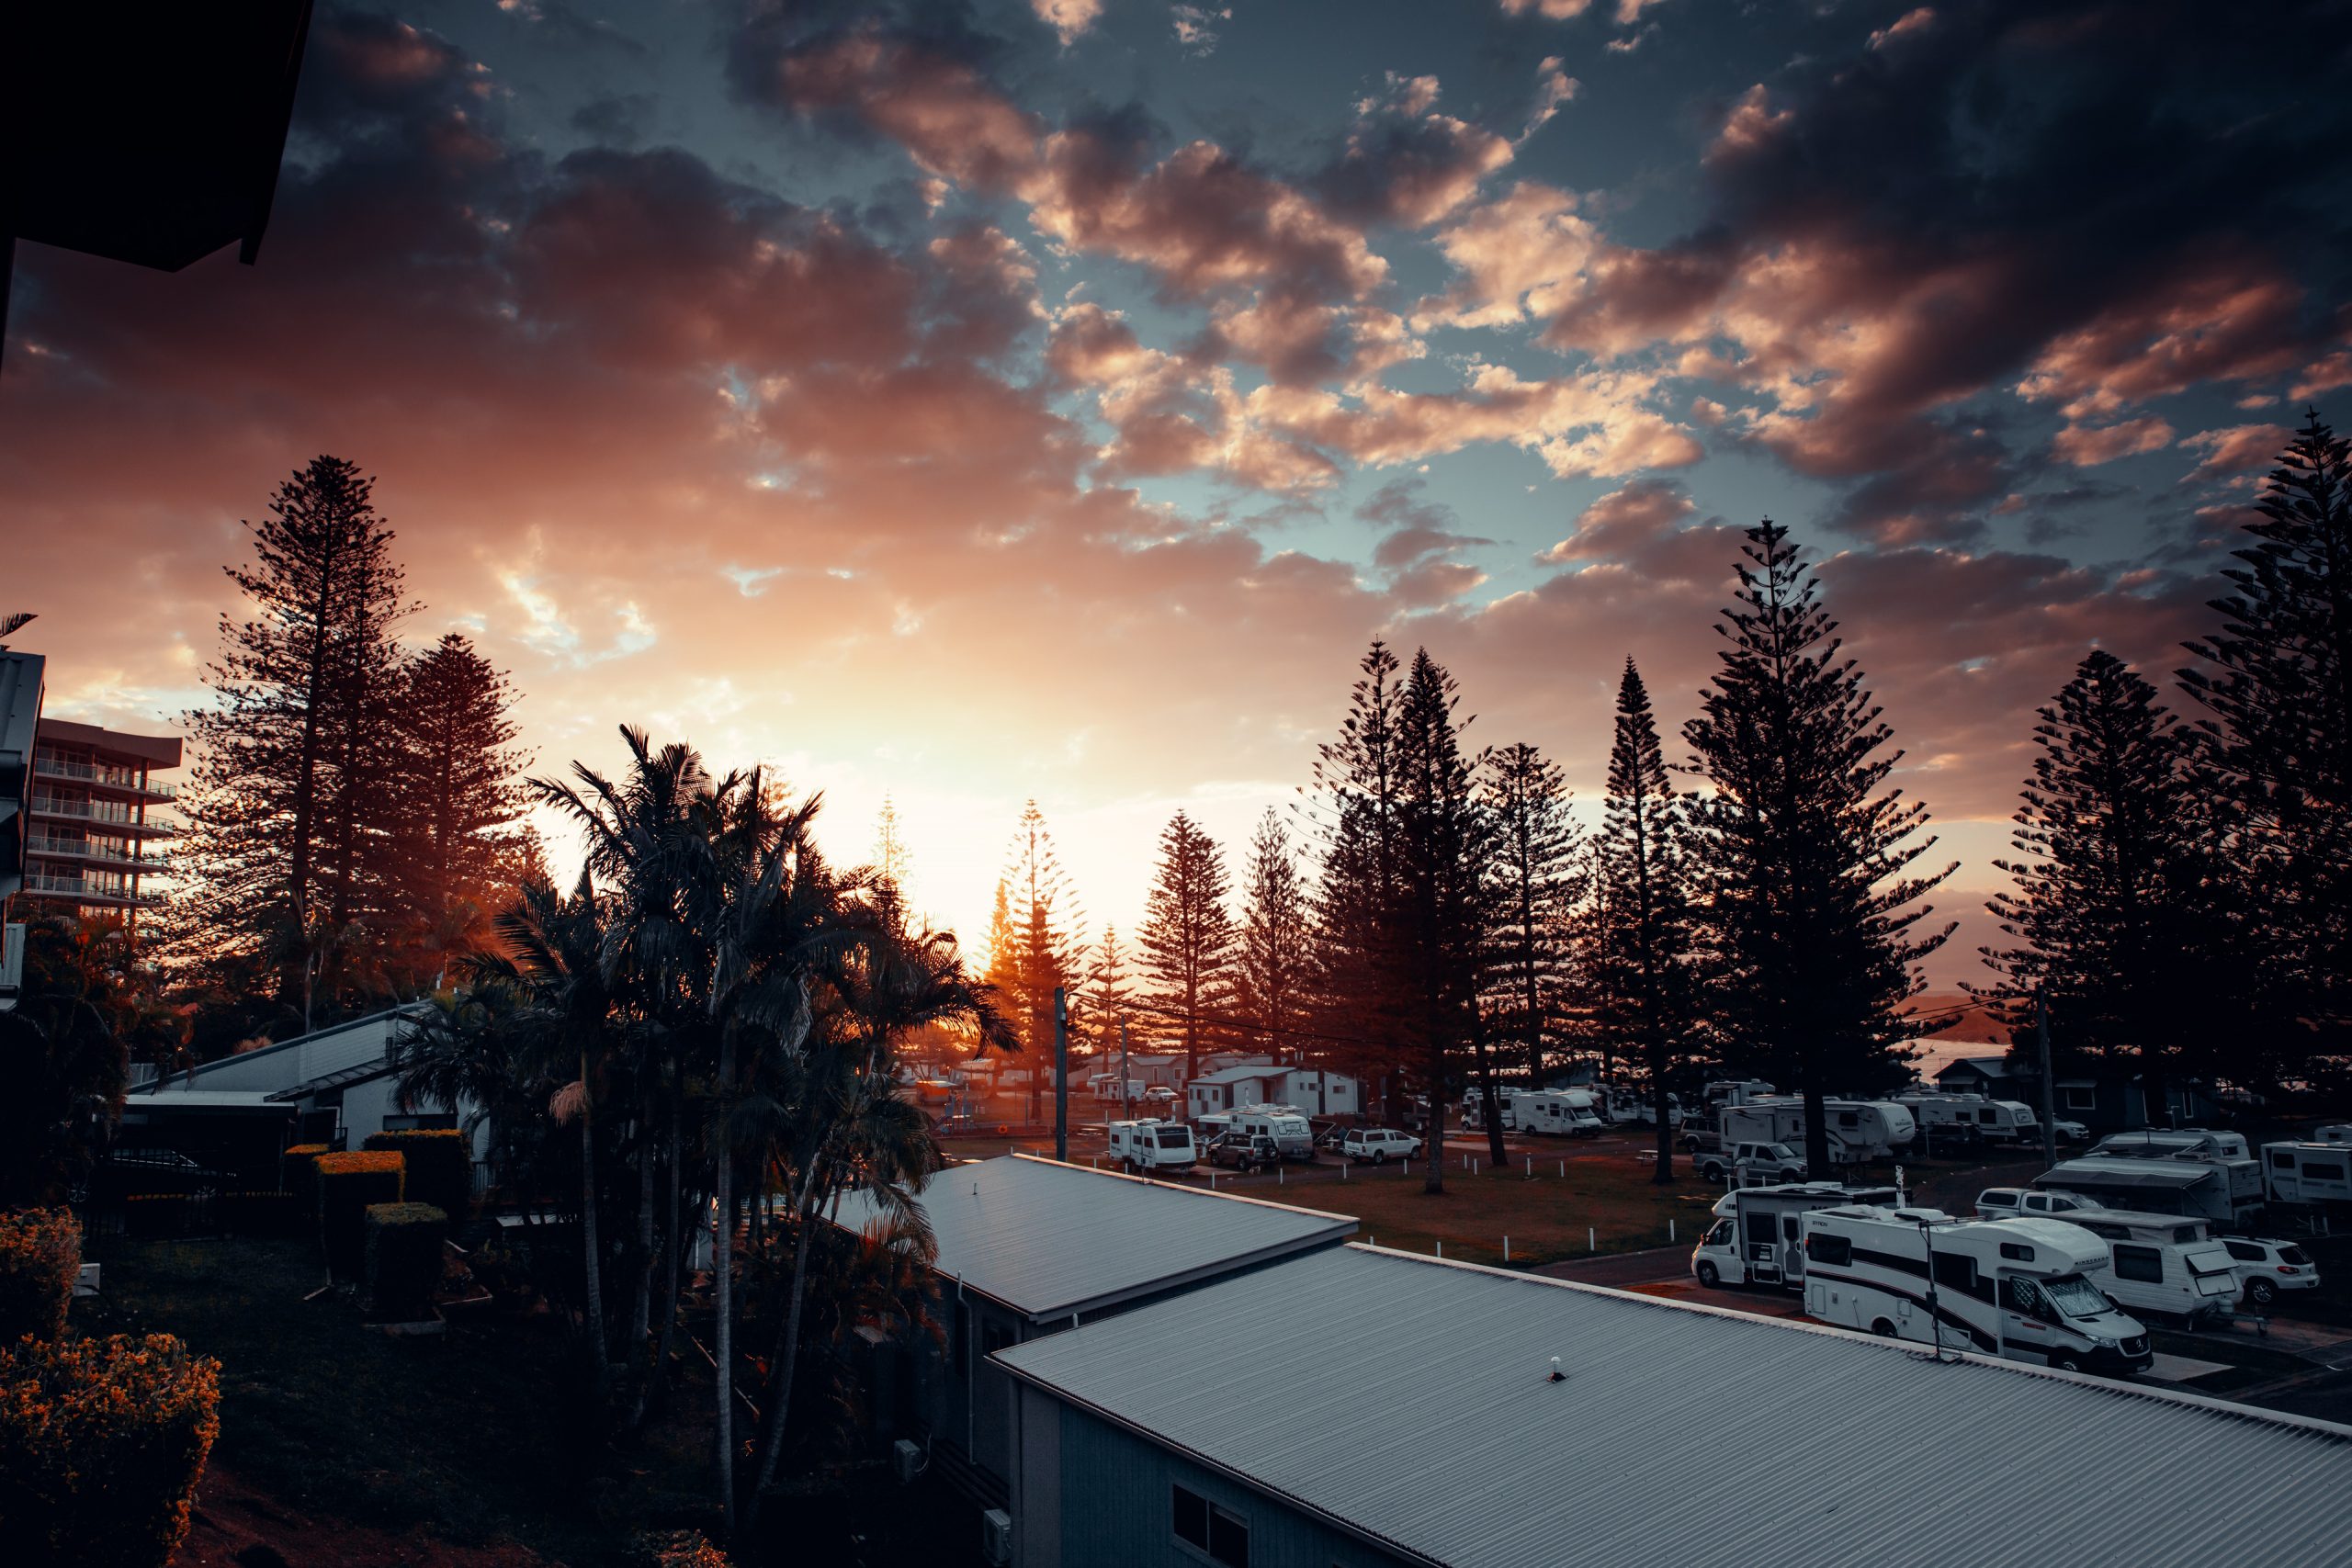 sunset at port Macquarie in a caravan park